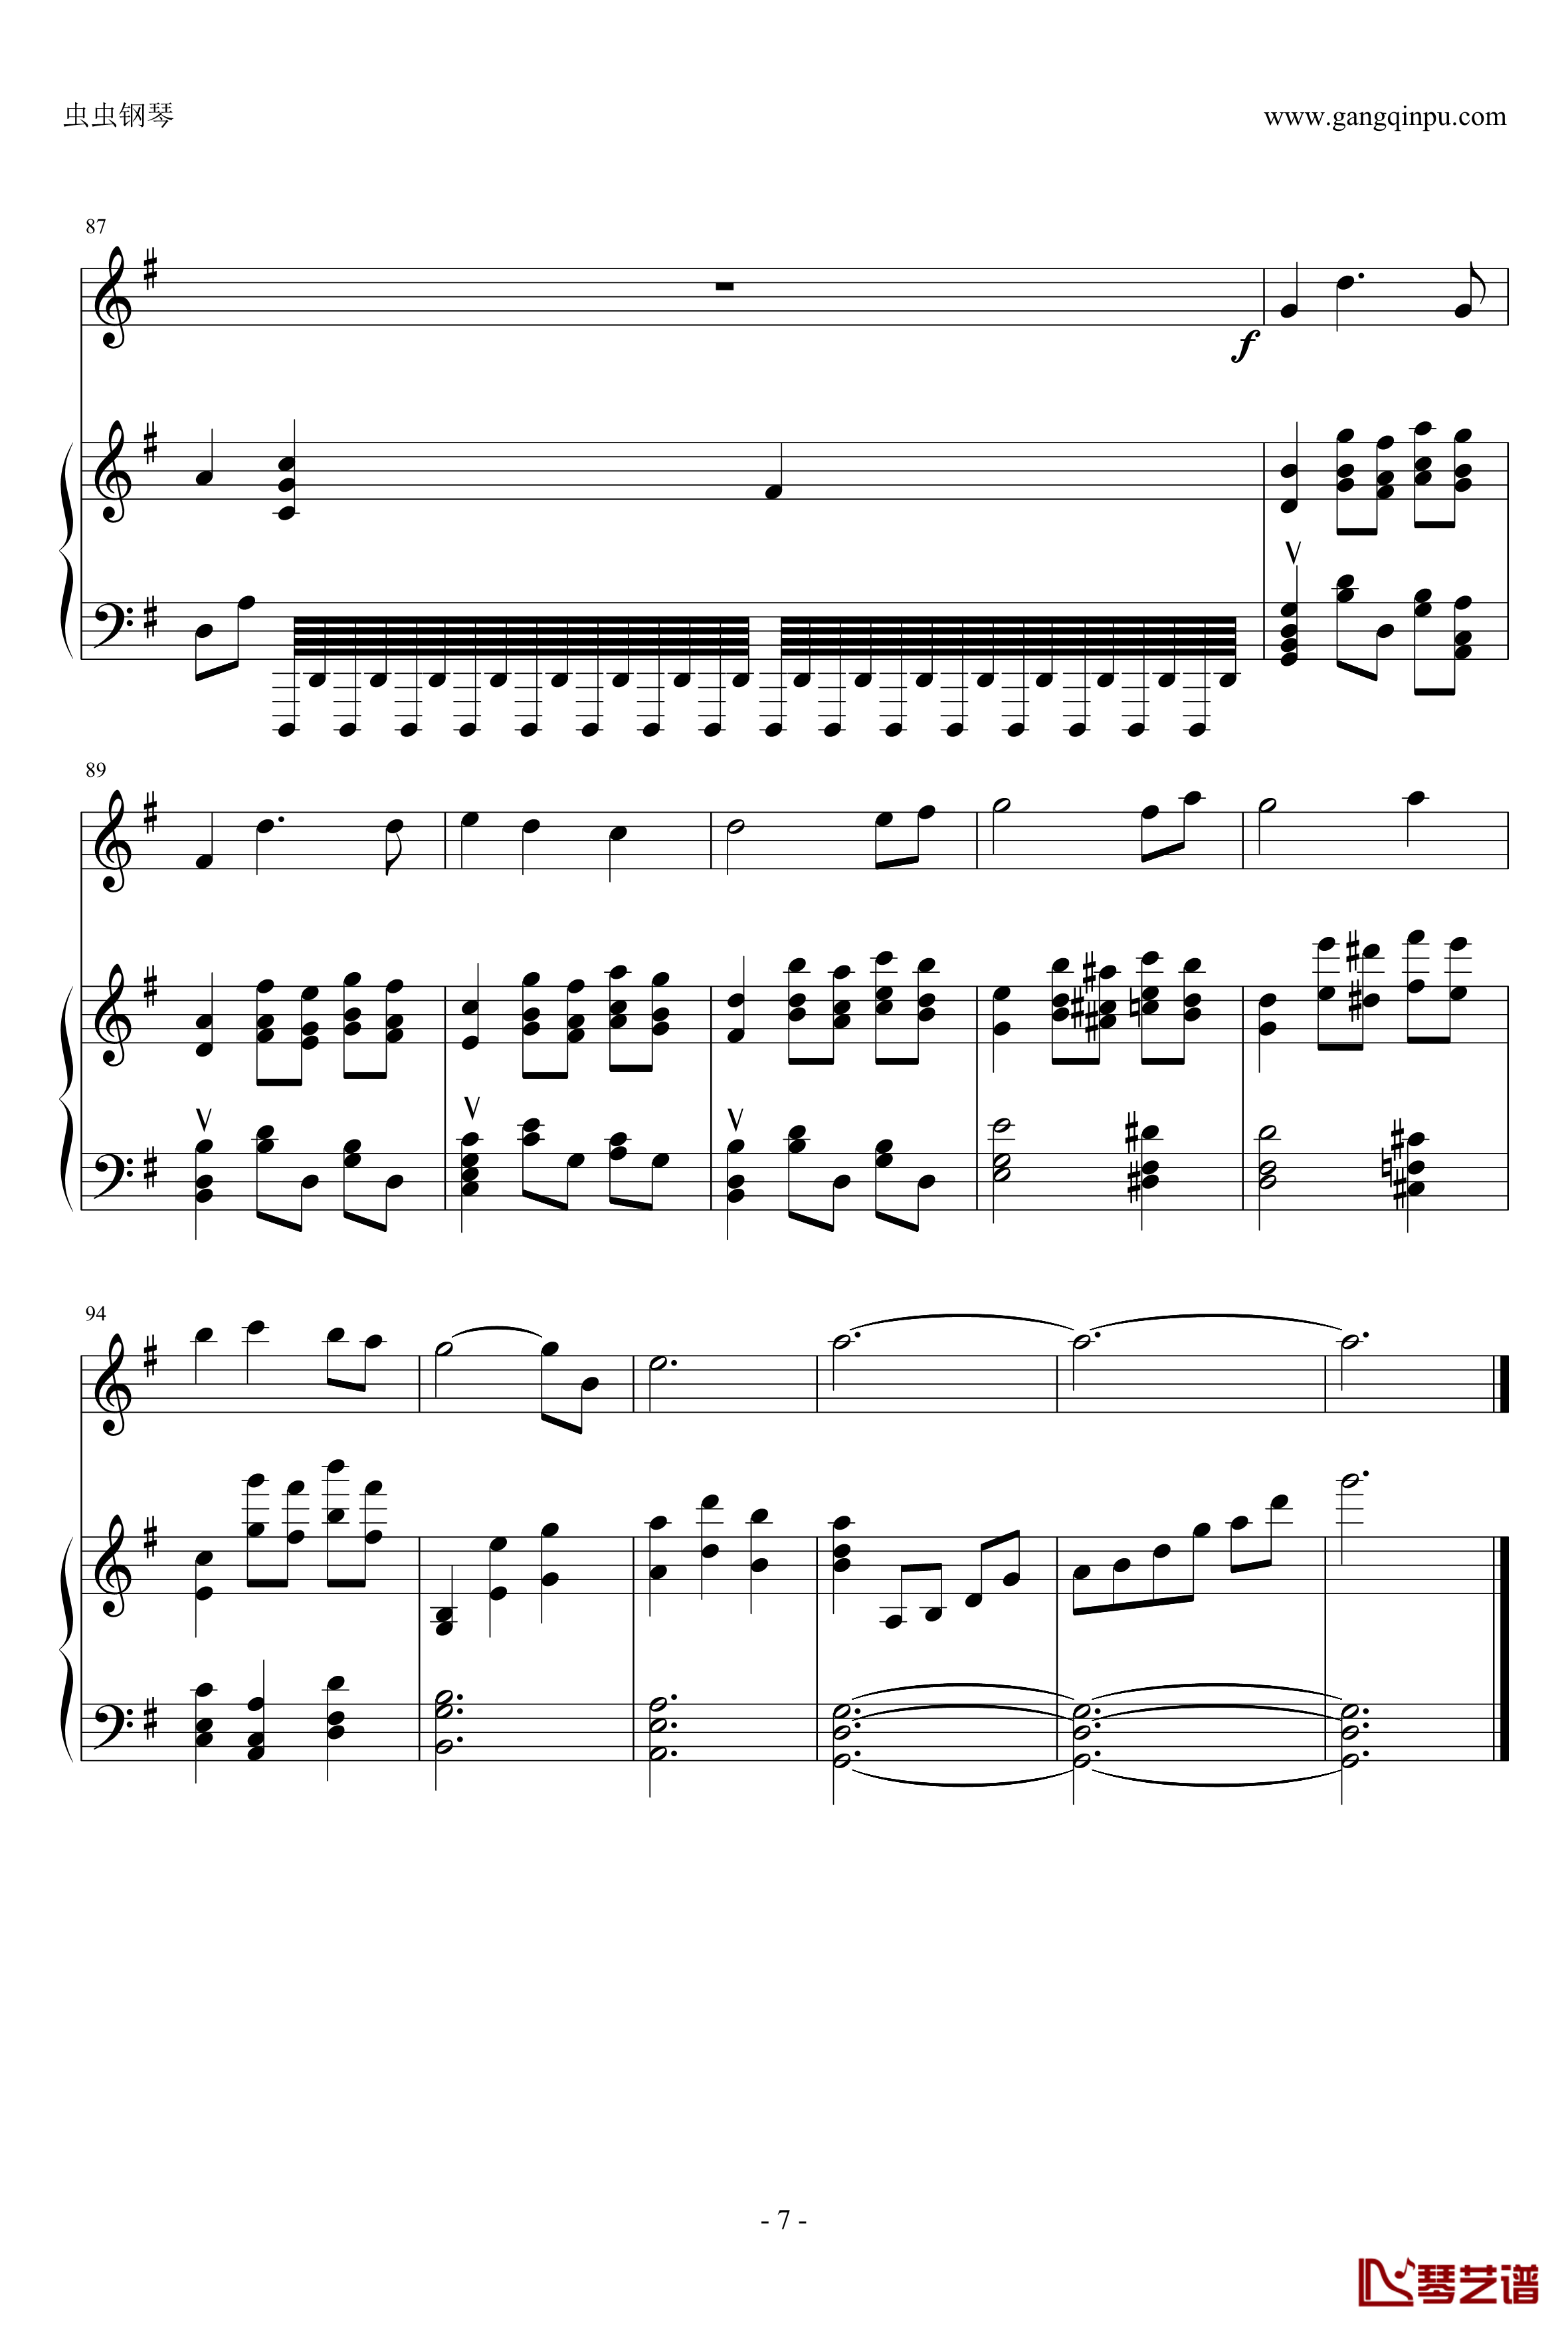 千寻的圆舞曲钢琴谱-钢琴+小提琴版-千与千寻7